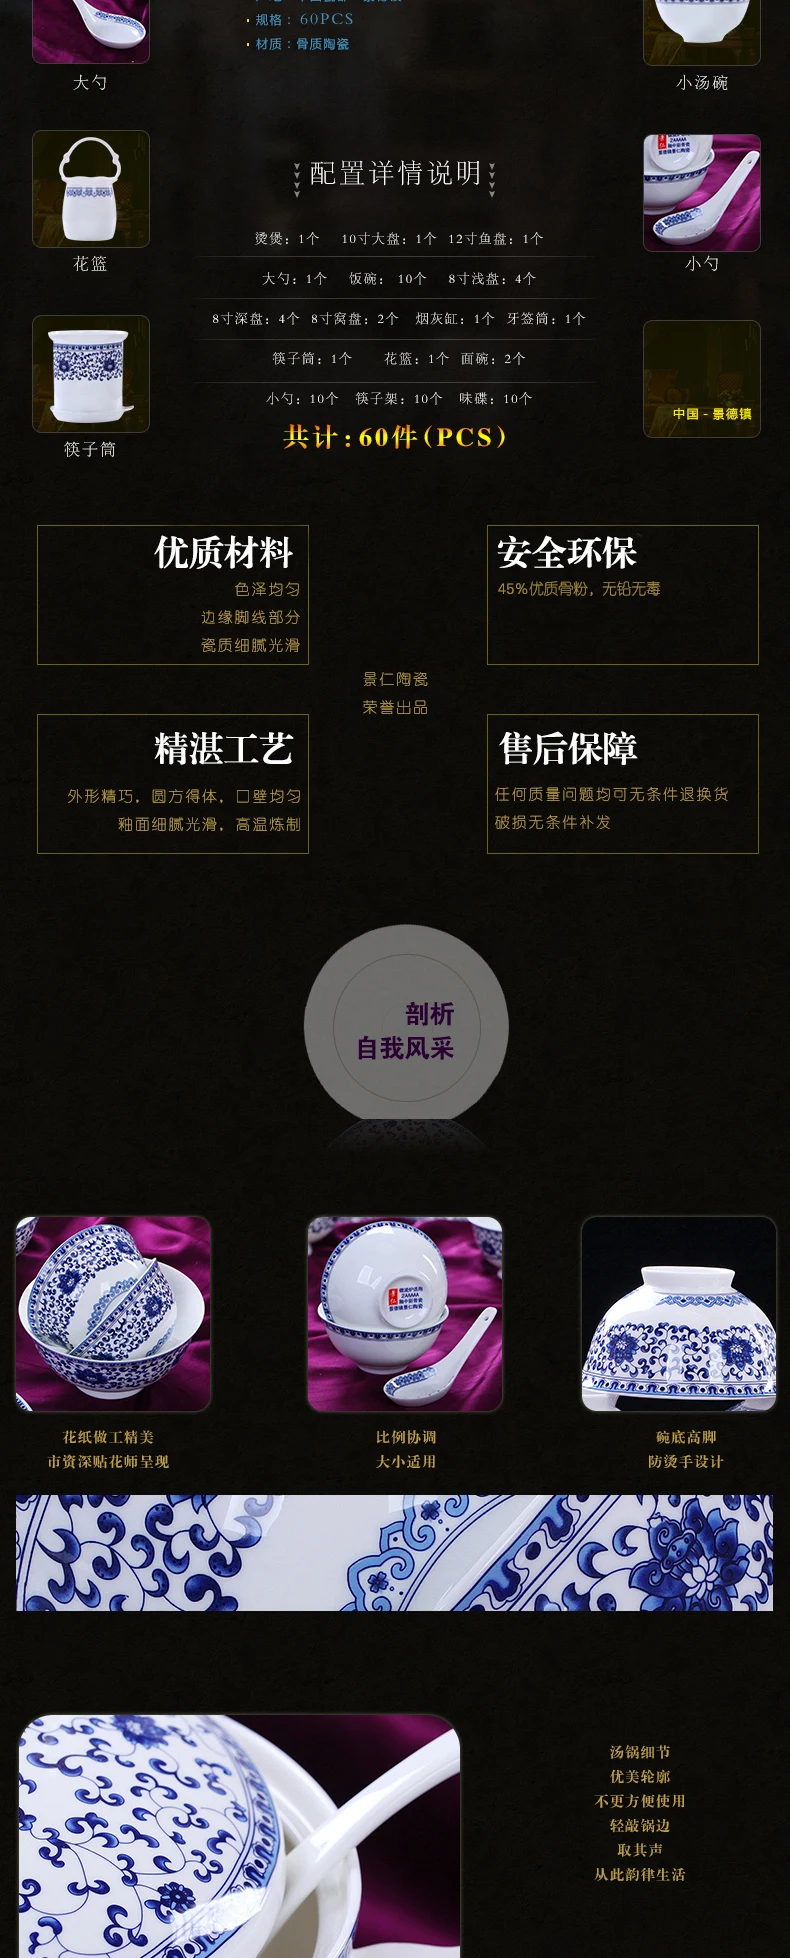 Цзин рен-посуда в Цзиндэчжэнь Набор 60 высококлассная керамическая посуда чаша голова костяного фарфора китайская бытовая